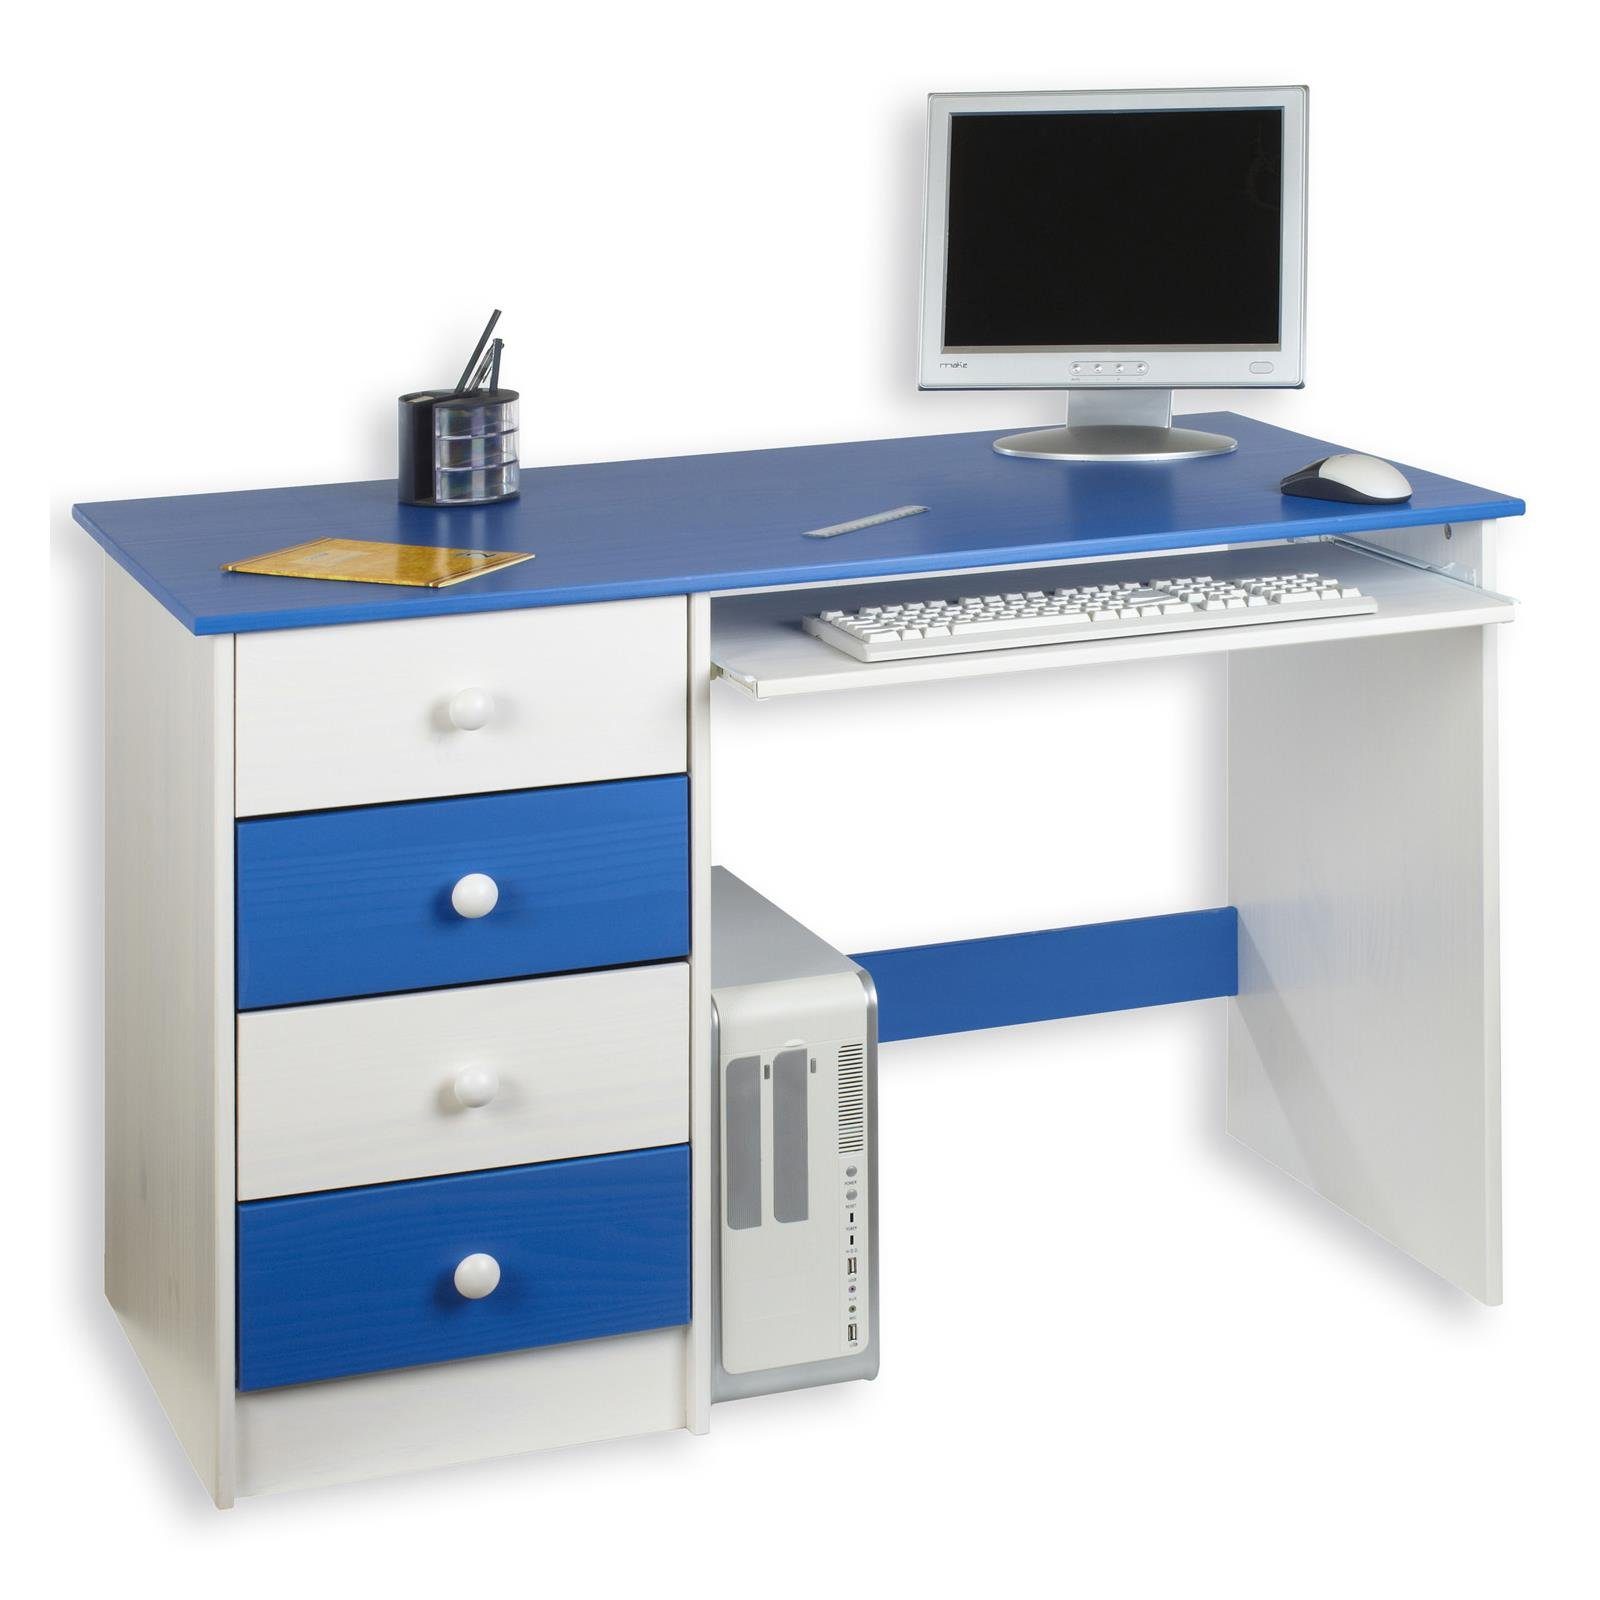 Kinderschreibtisch weiß/blau massiv Kiefer MALTE, Schülerschreibtisch IDIMEX Schreibtisch weis Kinderschreibtisch